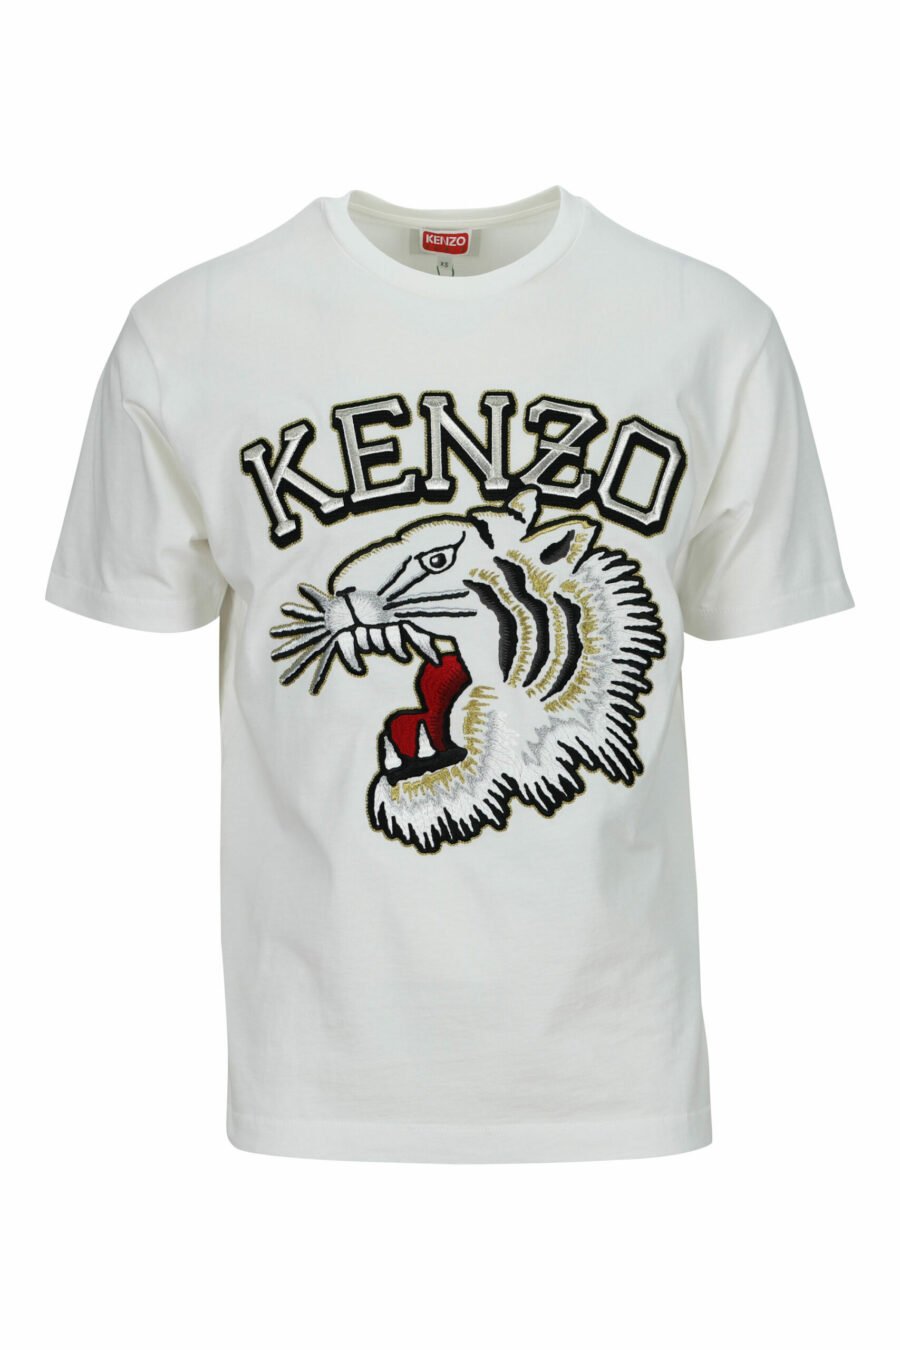 T-shirt blanc oversize avec grand logo tigré en relief - 3612230568013 scaled